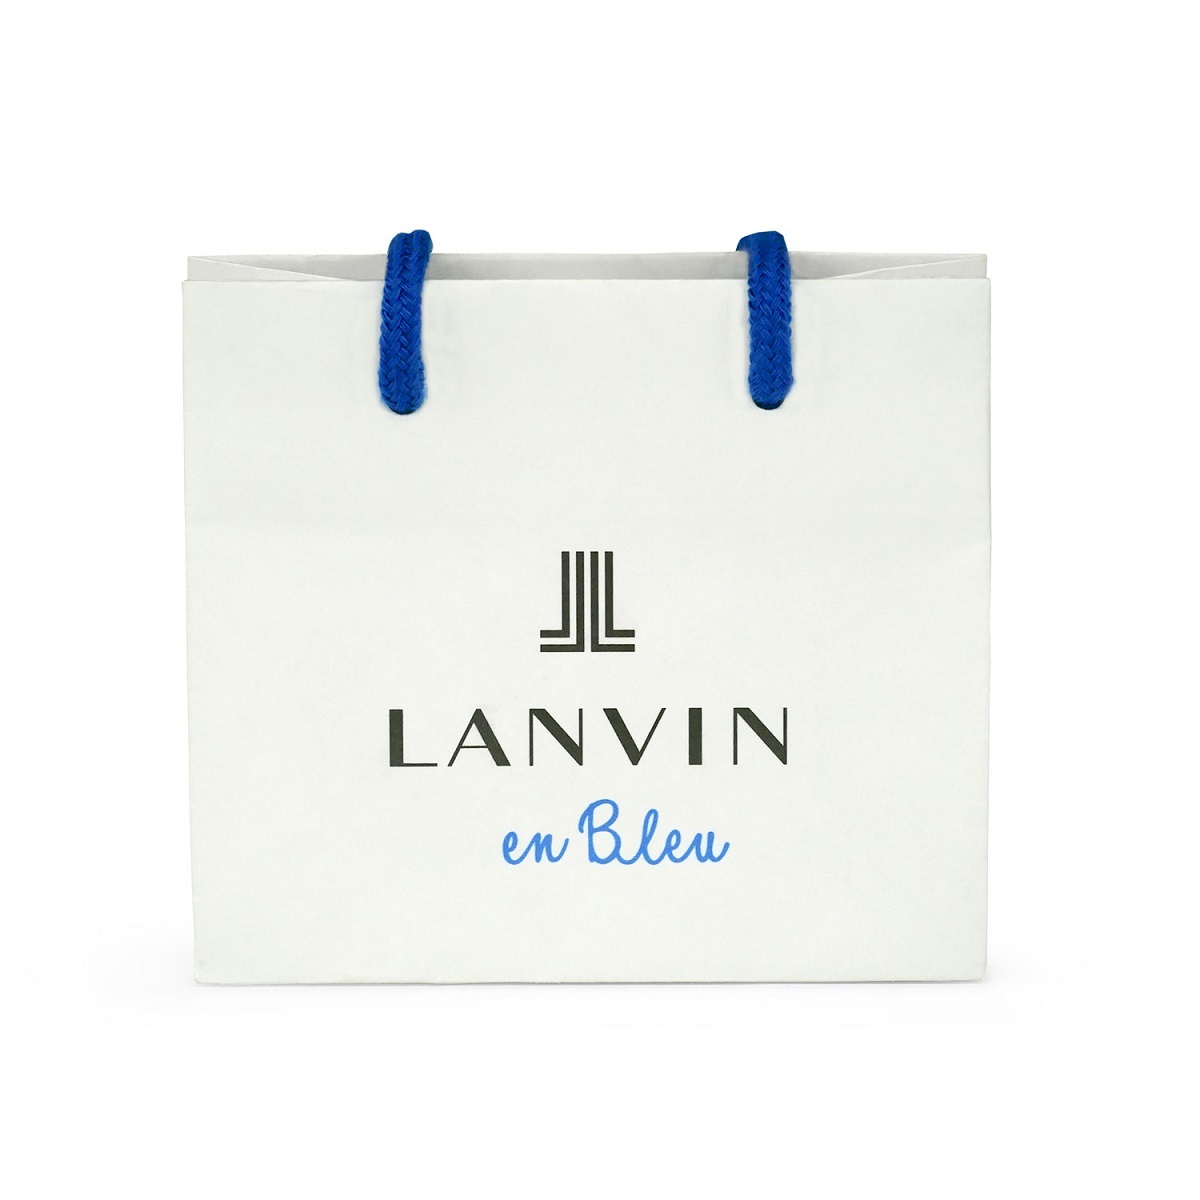 リボン型バレッタ | ランバン オン ブルー(LANVIN en Bleu) | LATH0523 